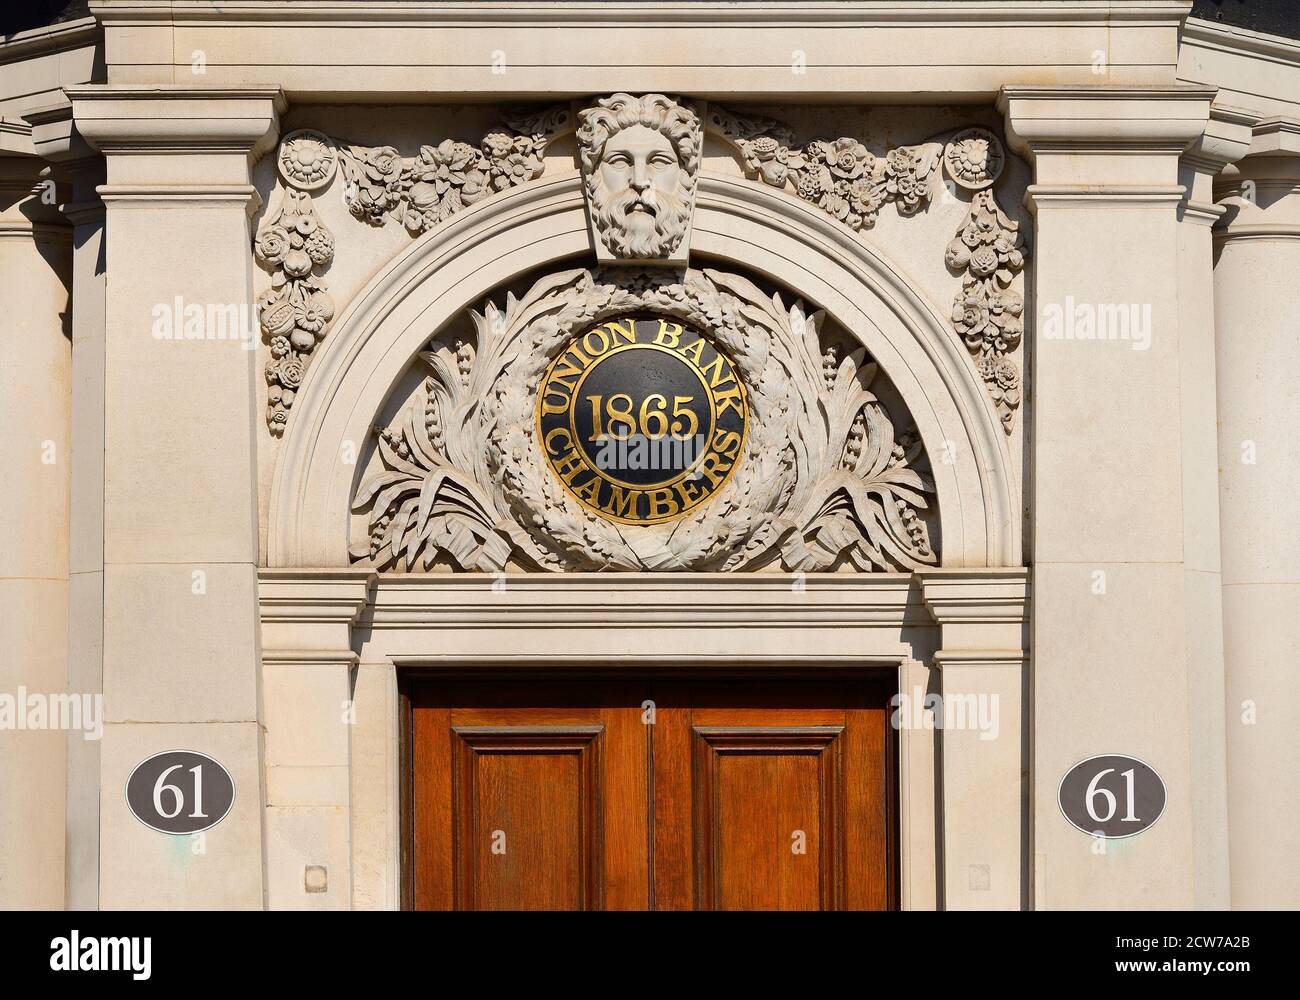 London, England, Großbritannien. Union Bank Chambers (1865), 61 Carey Street. Früher die Union Bank of London Limited, Chancery Lane Branch, jetzt ein Pub/Restaurant Stockfoto